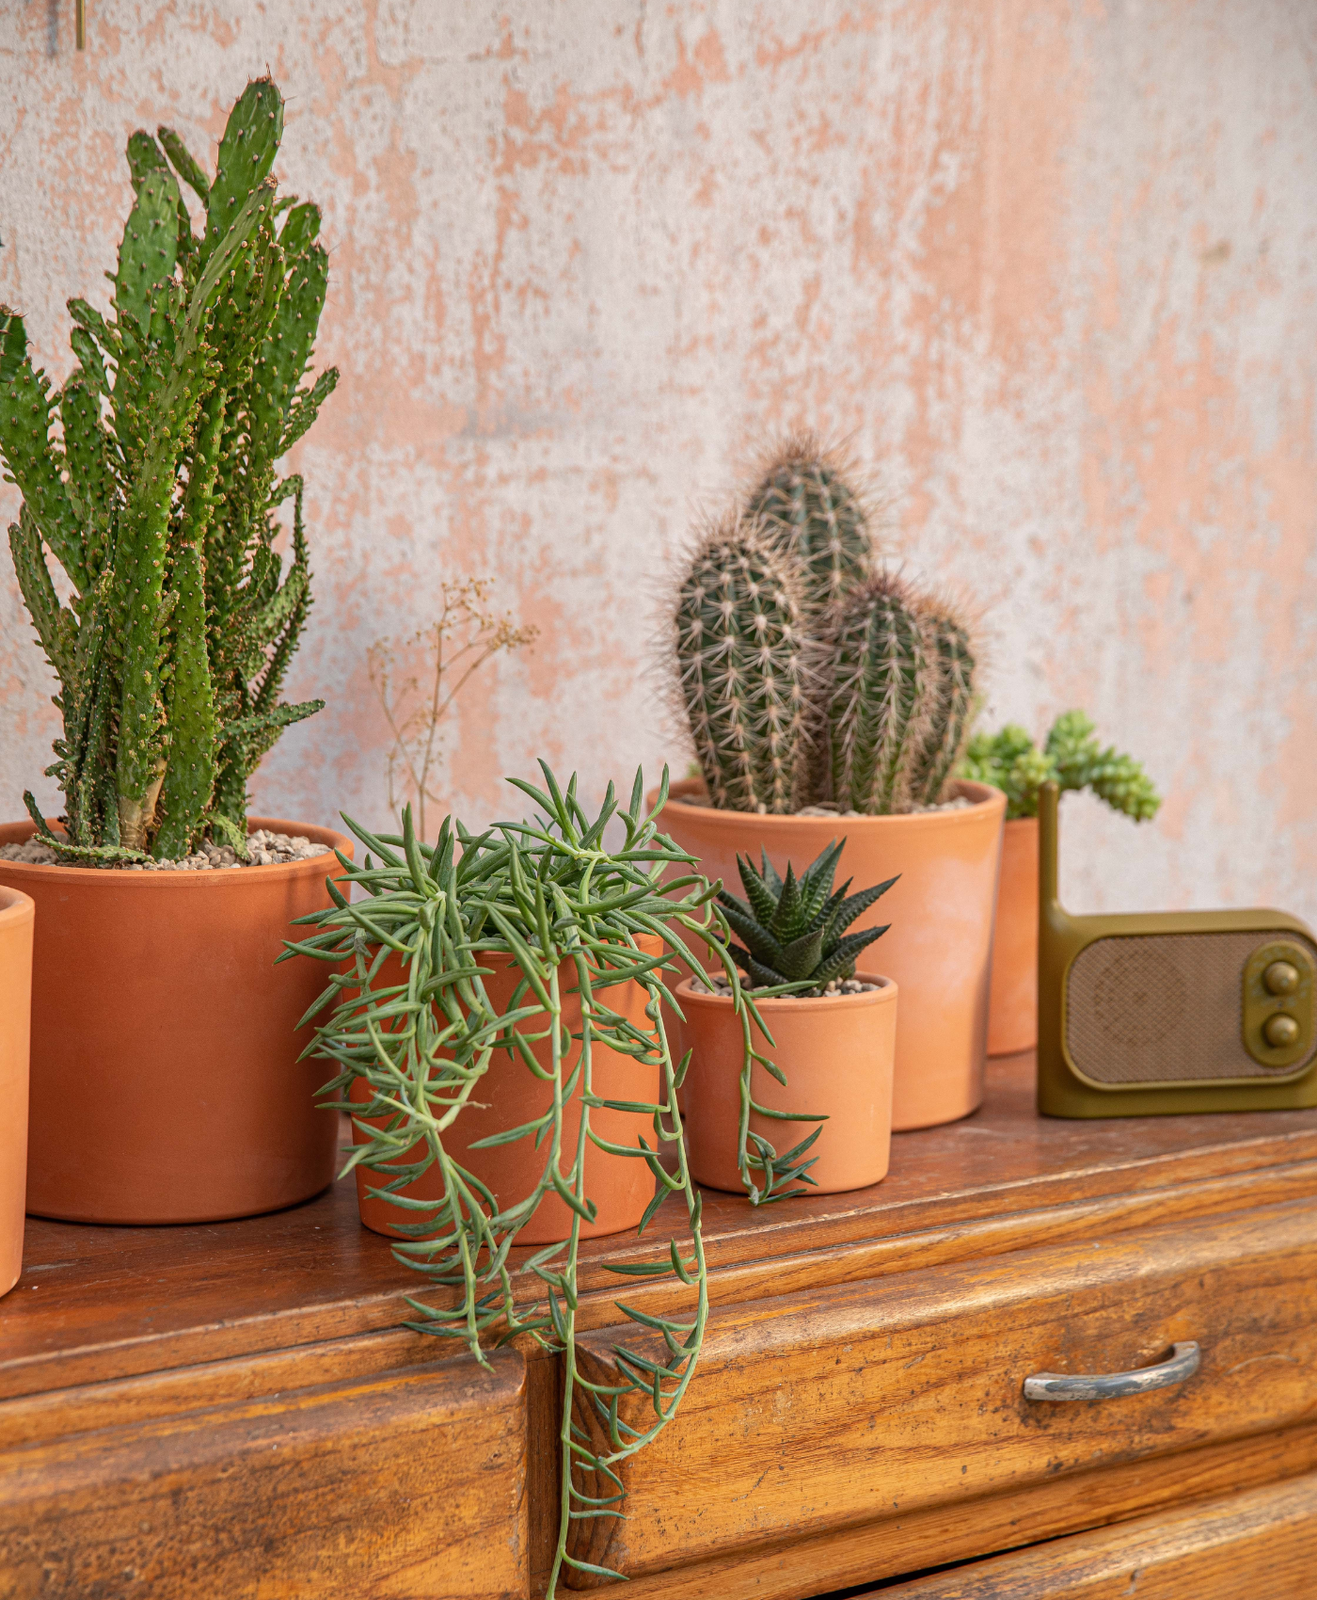 Différentes variétés de cactus et succulentes avec leur pot en terre cuite, posés sur une commande en bois